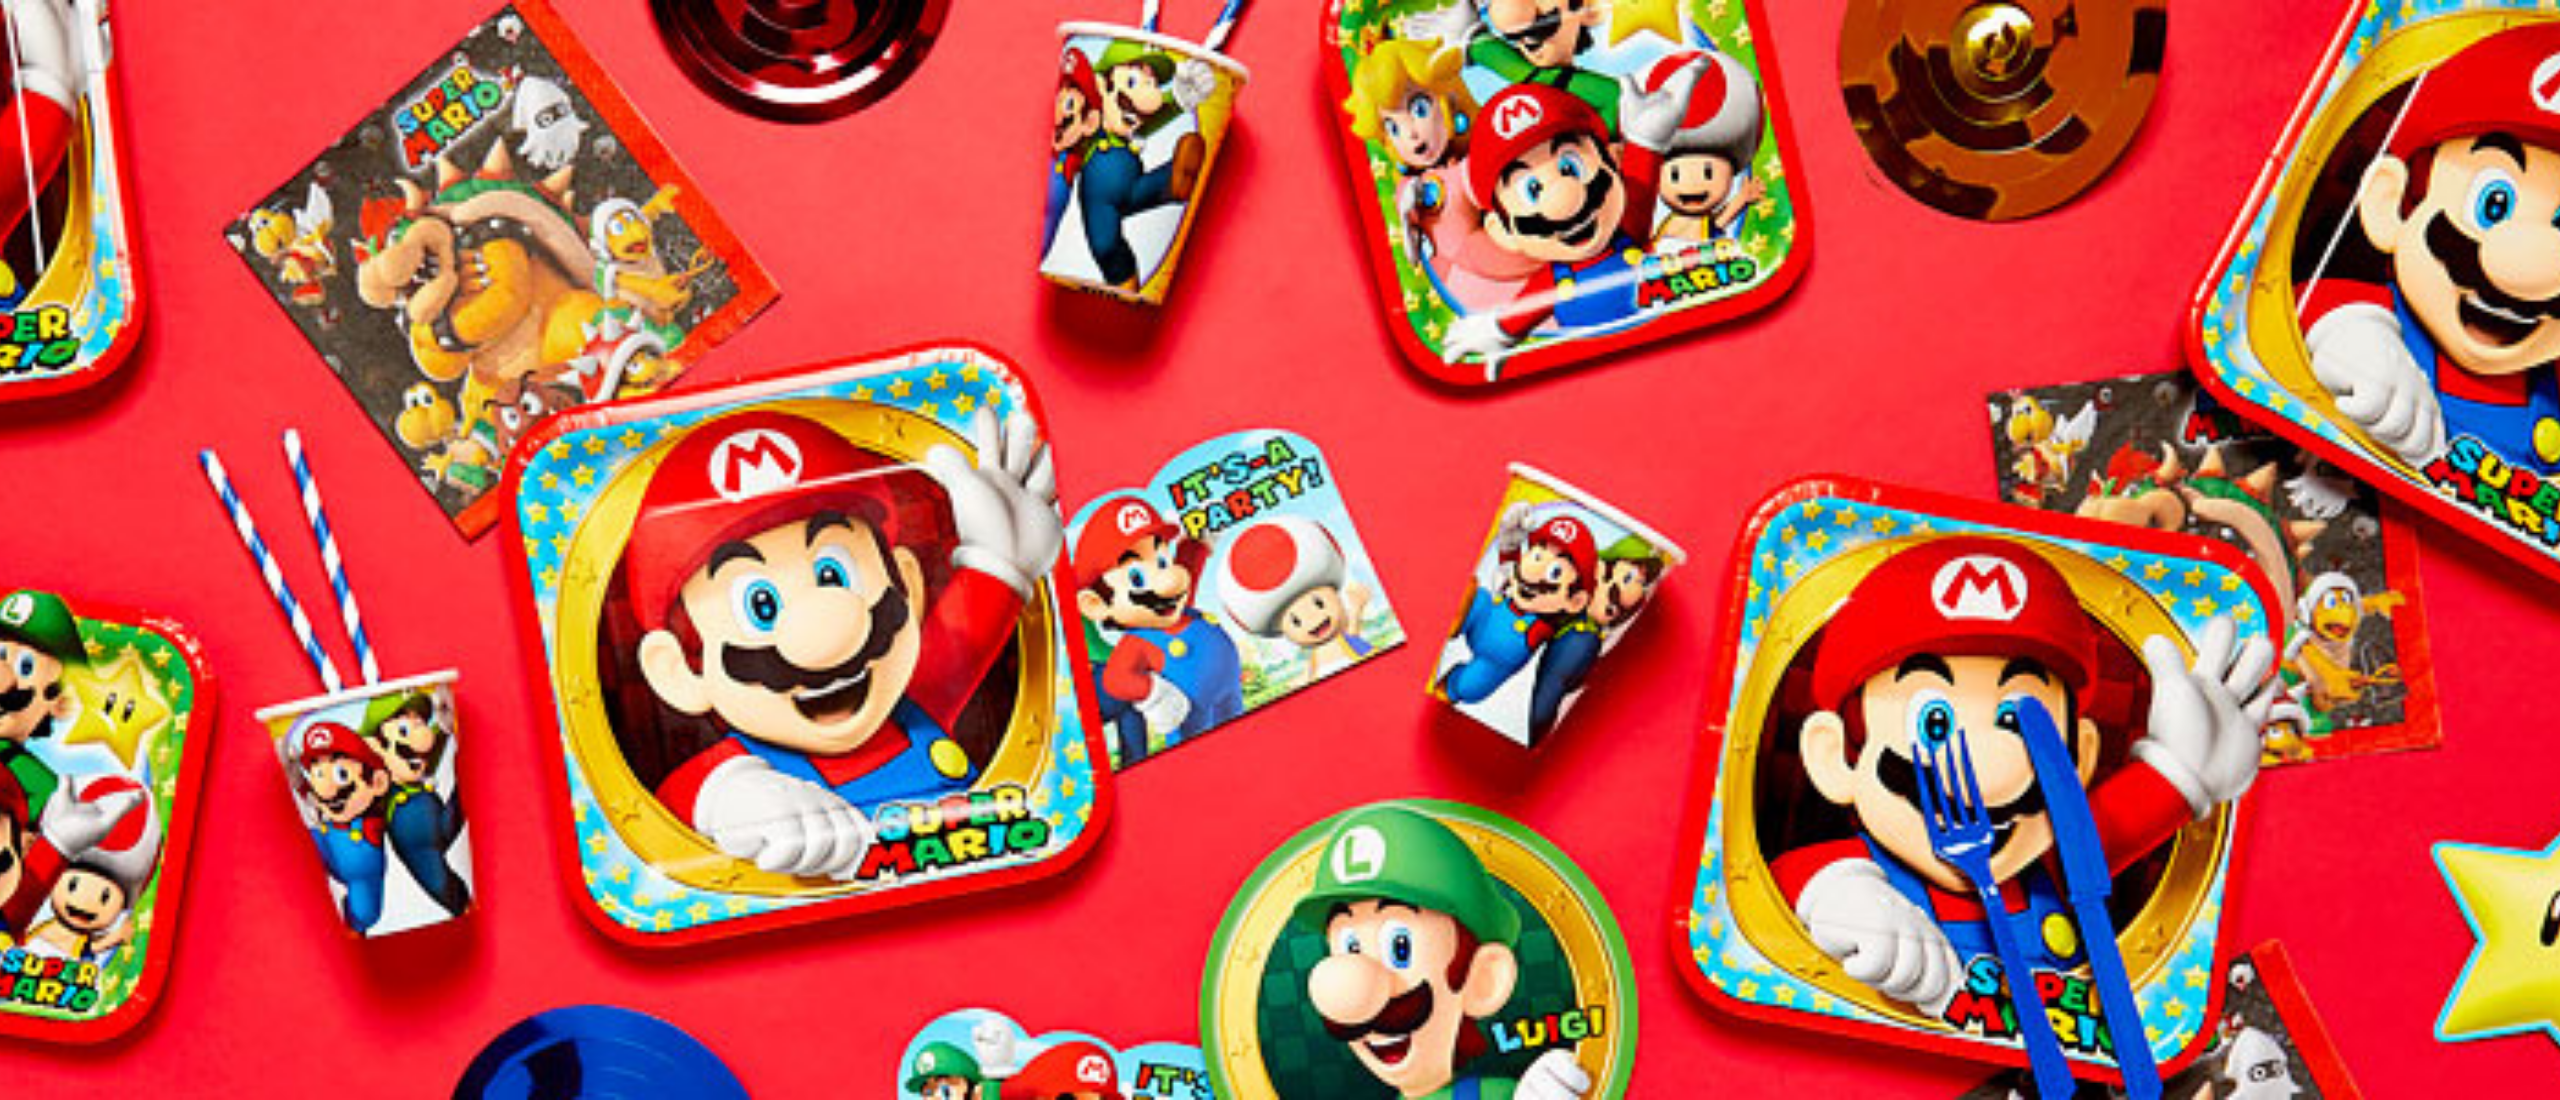 Een super Mario kinderfeestje thuis organiseren